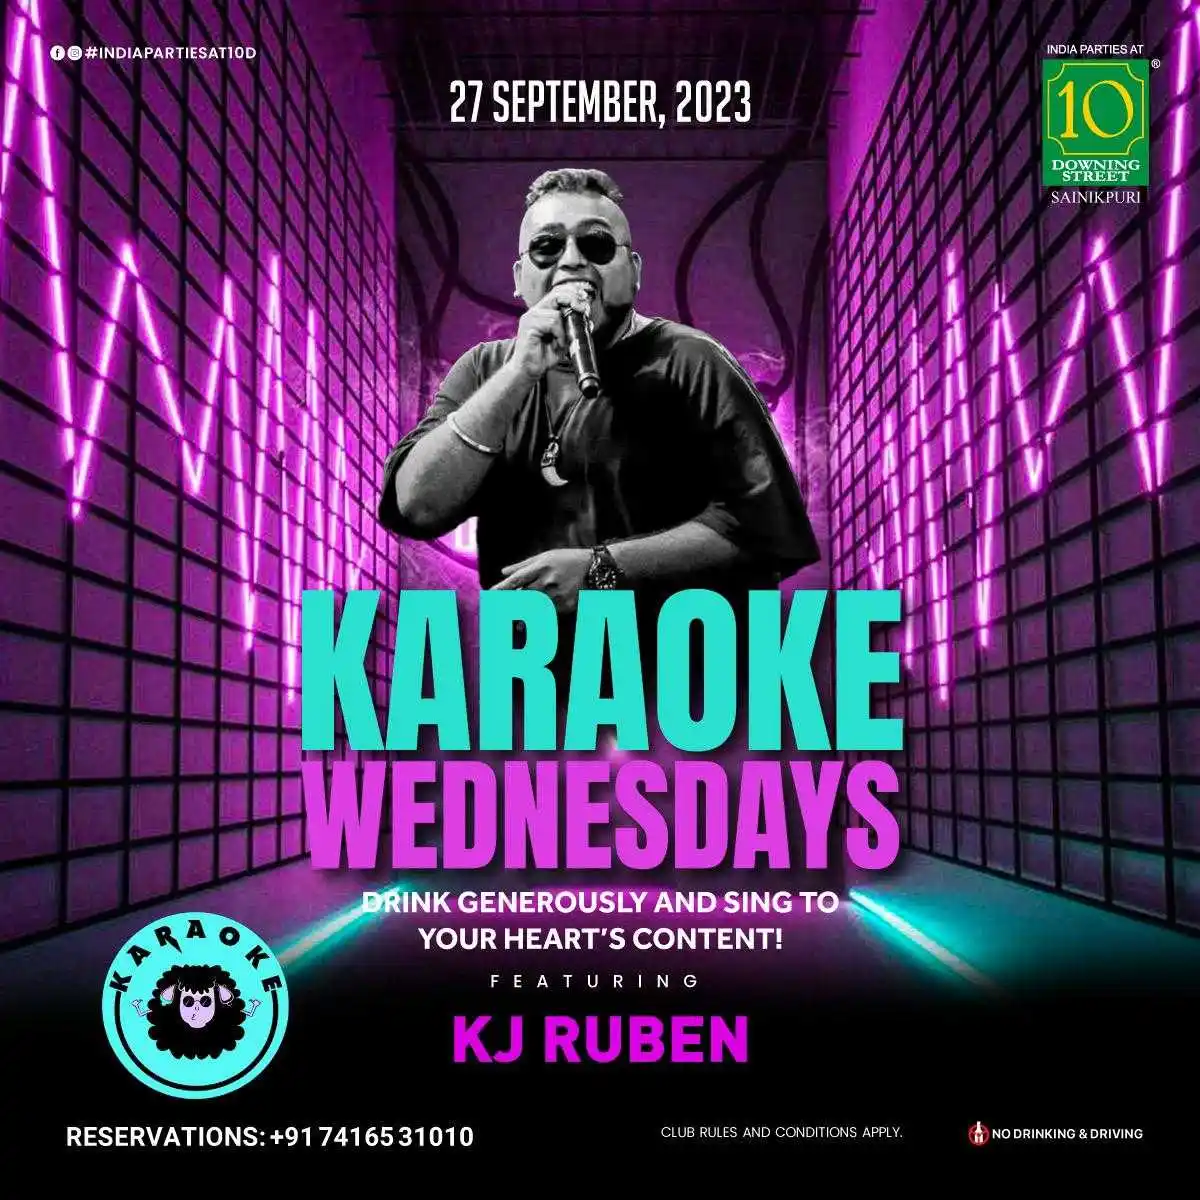 Karaoke Wednesday with KJ Ruben